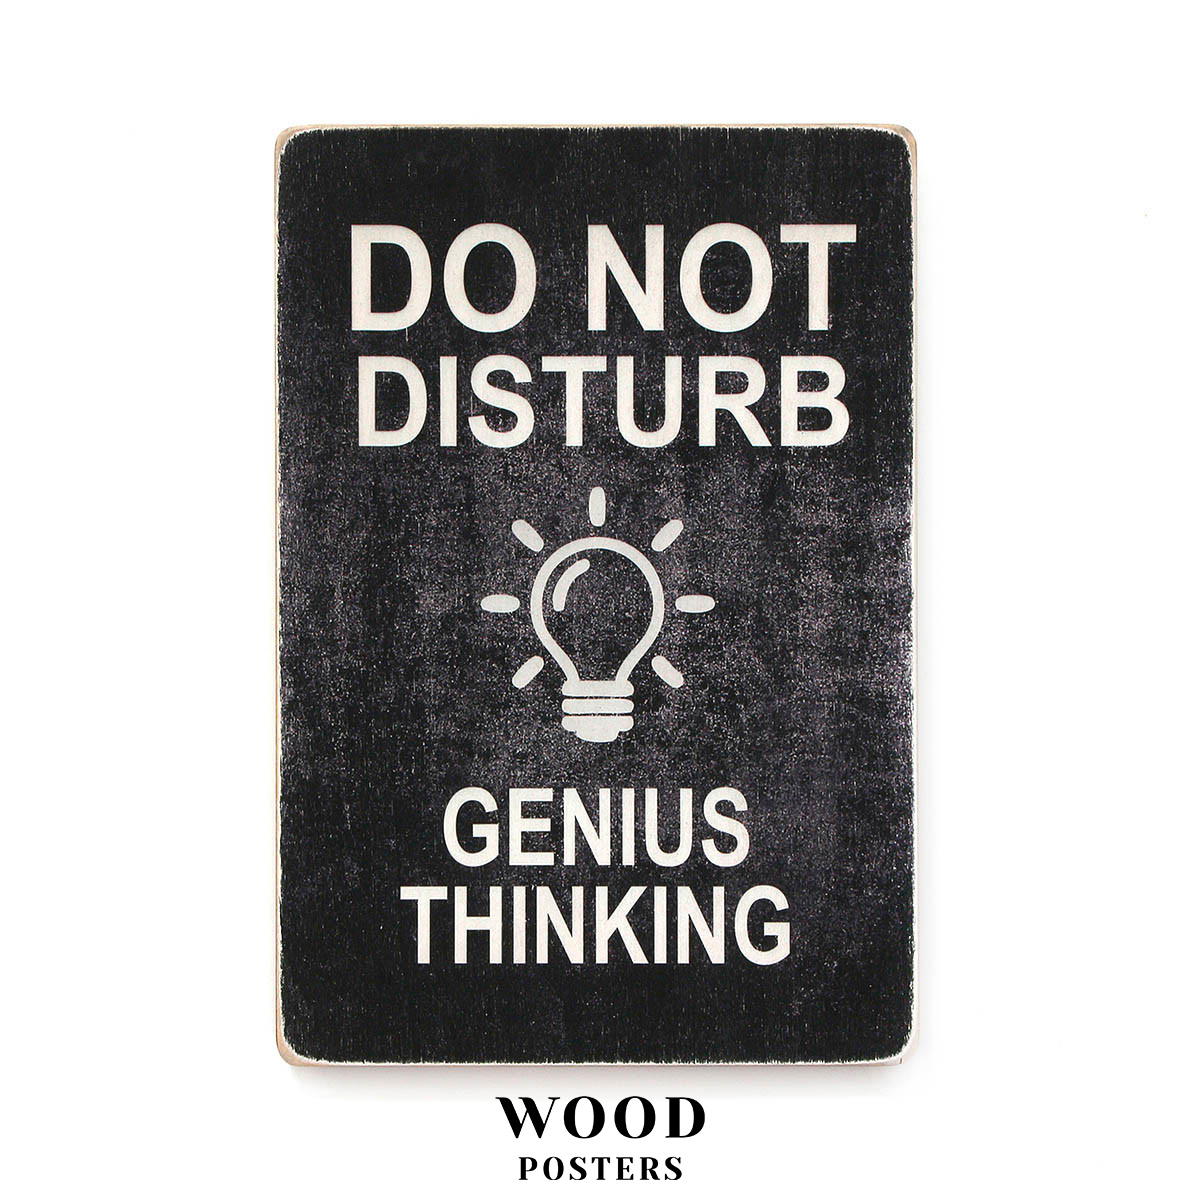 Do not disturb. Genius thinking. Black background